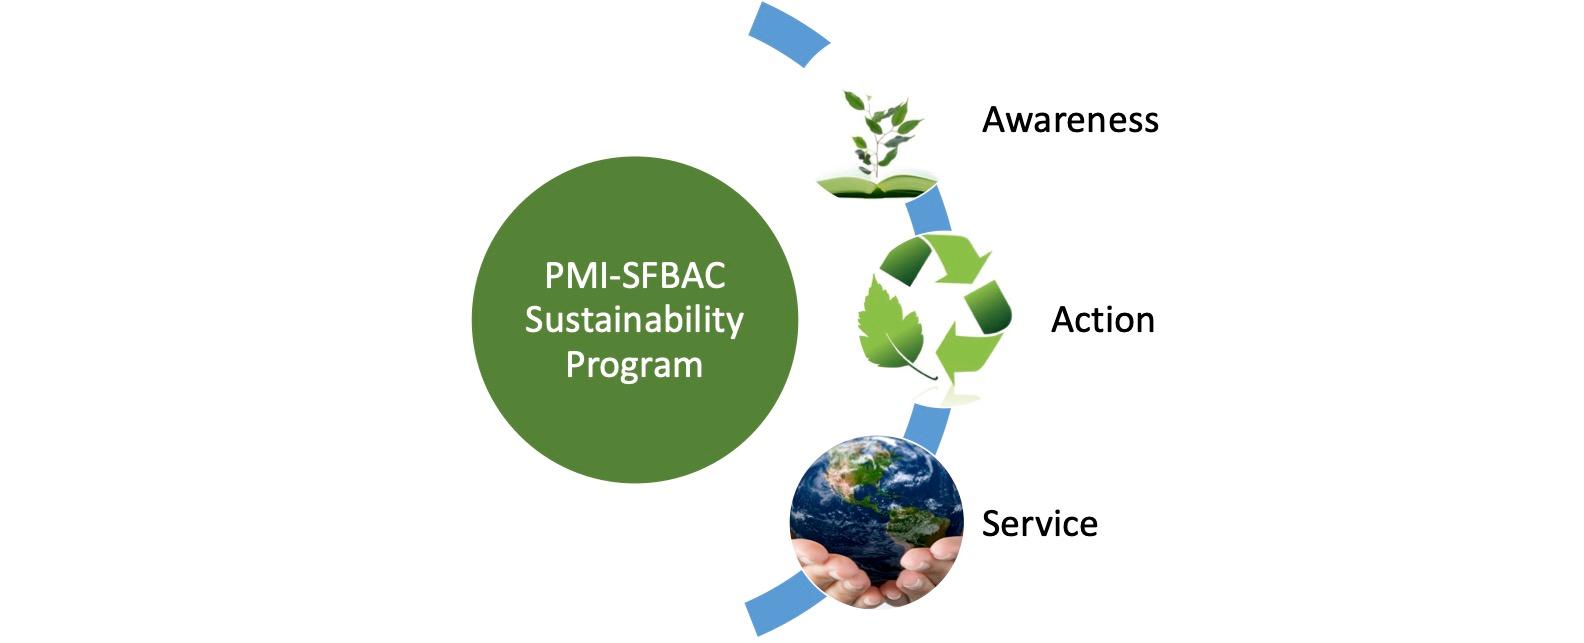 PMI-SFBAC-Sustainability-Program-Overview.jpg